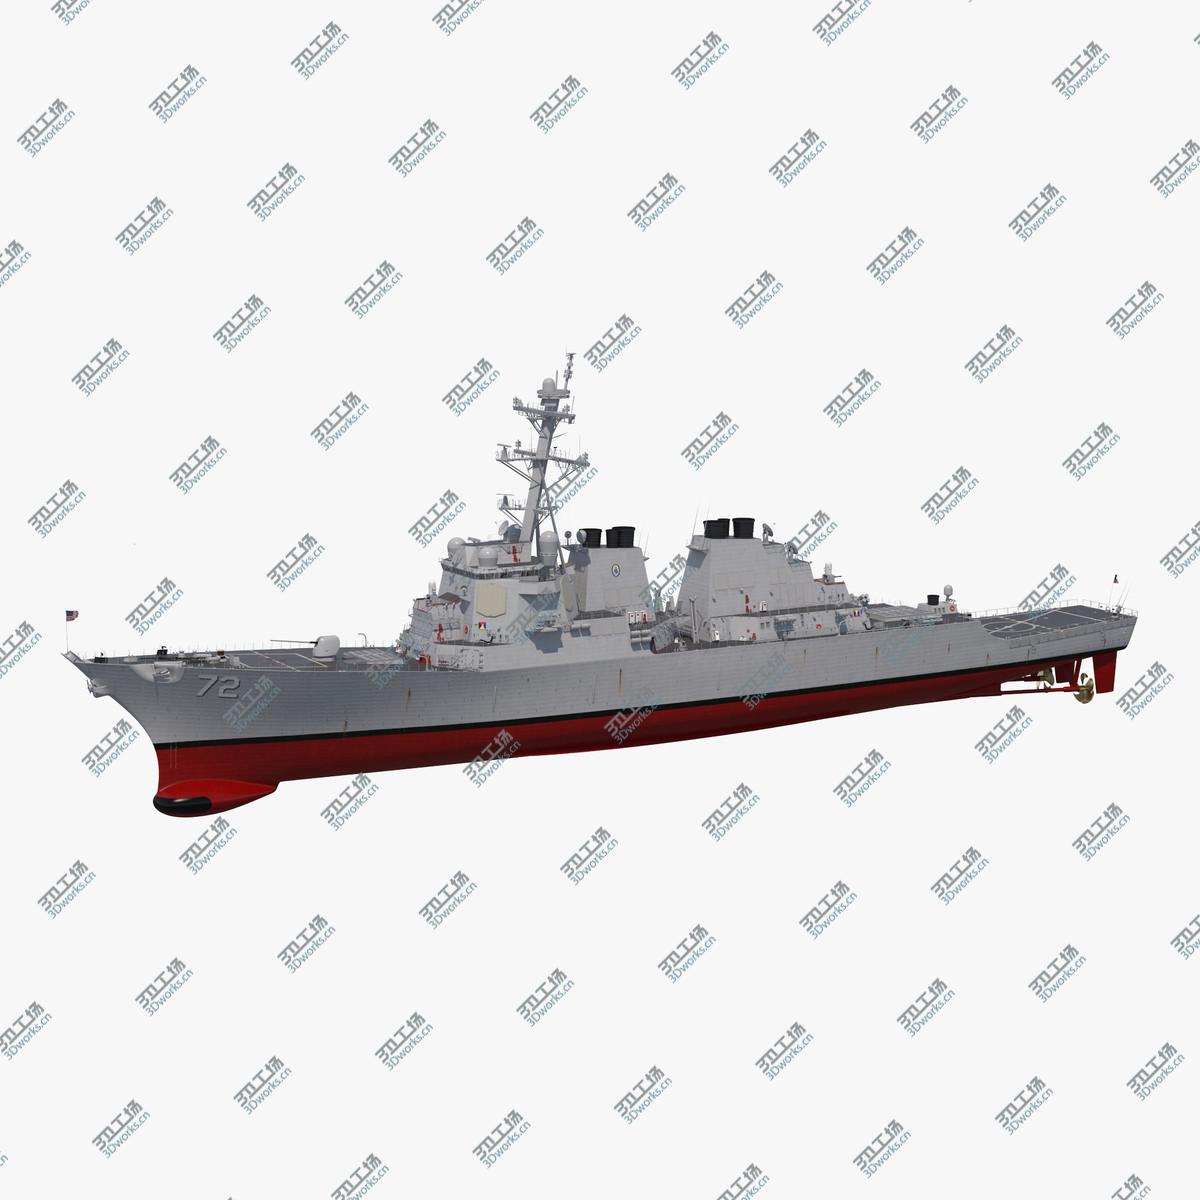 images/goods_img/2021040234/Arleigh Burke Destroyer Mahan DDG-72 3D model/1.jpg